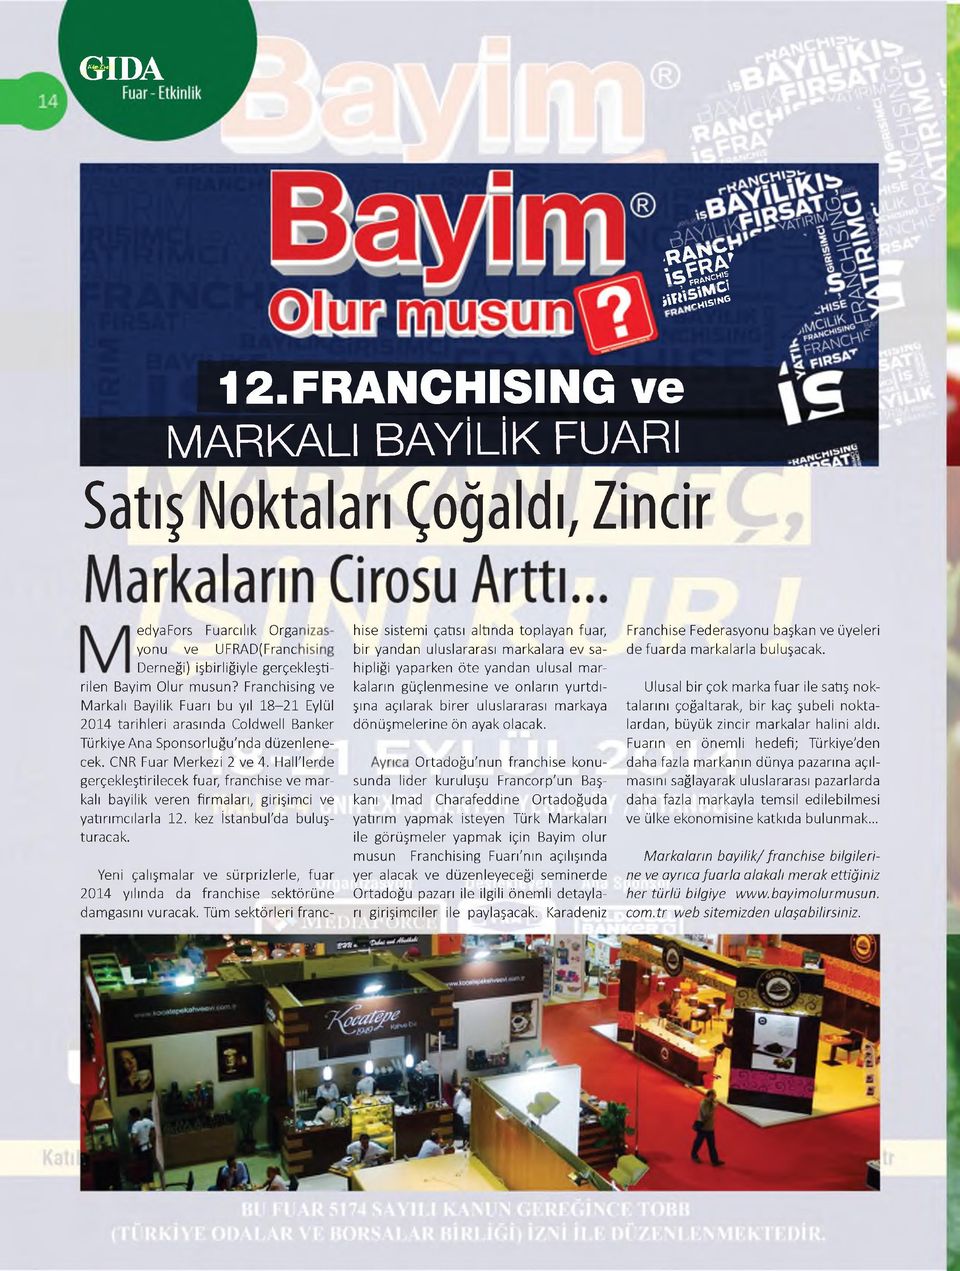 Hall'lerde gerçekleştirilecek fuar, franchise ve markalı bayilik veren firmaları, girişimci ve yatırımcılarla 12. kez İstanbul'da buluşturacak.